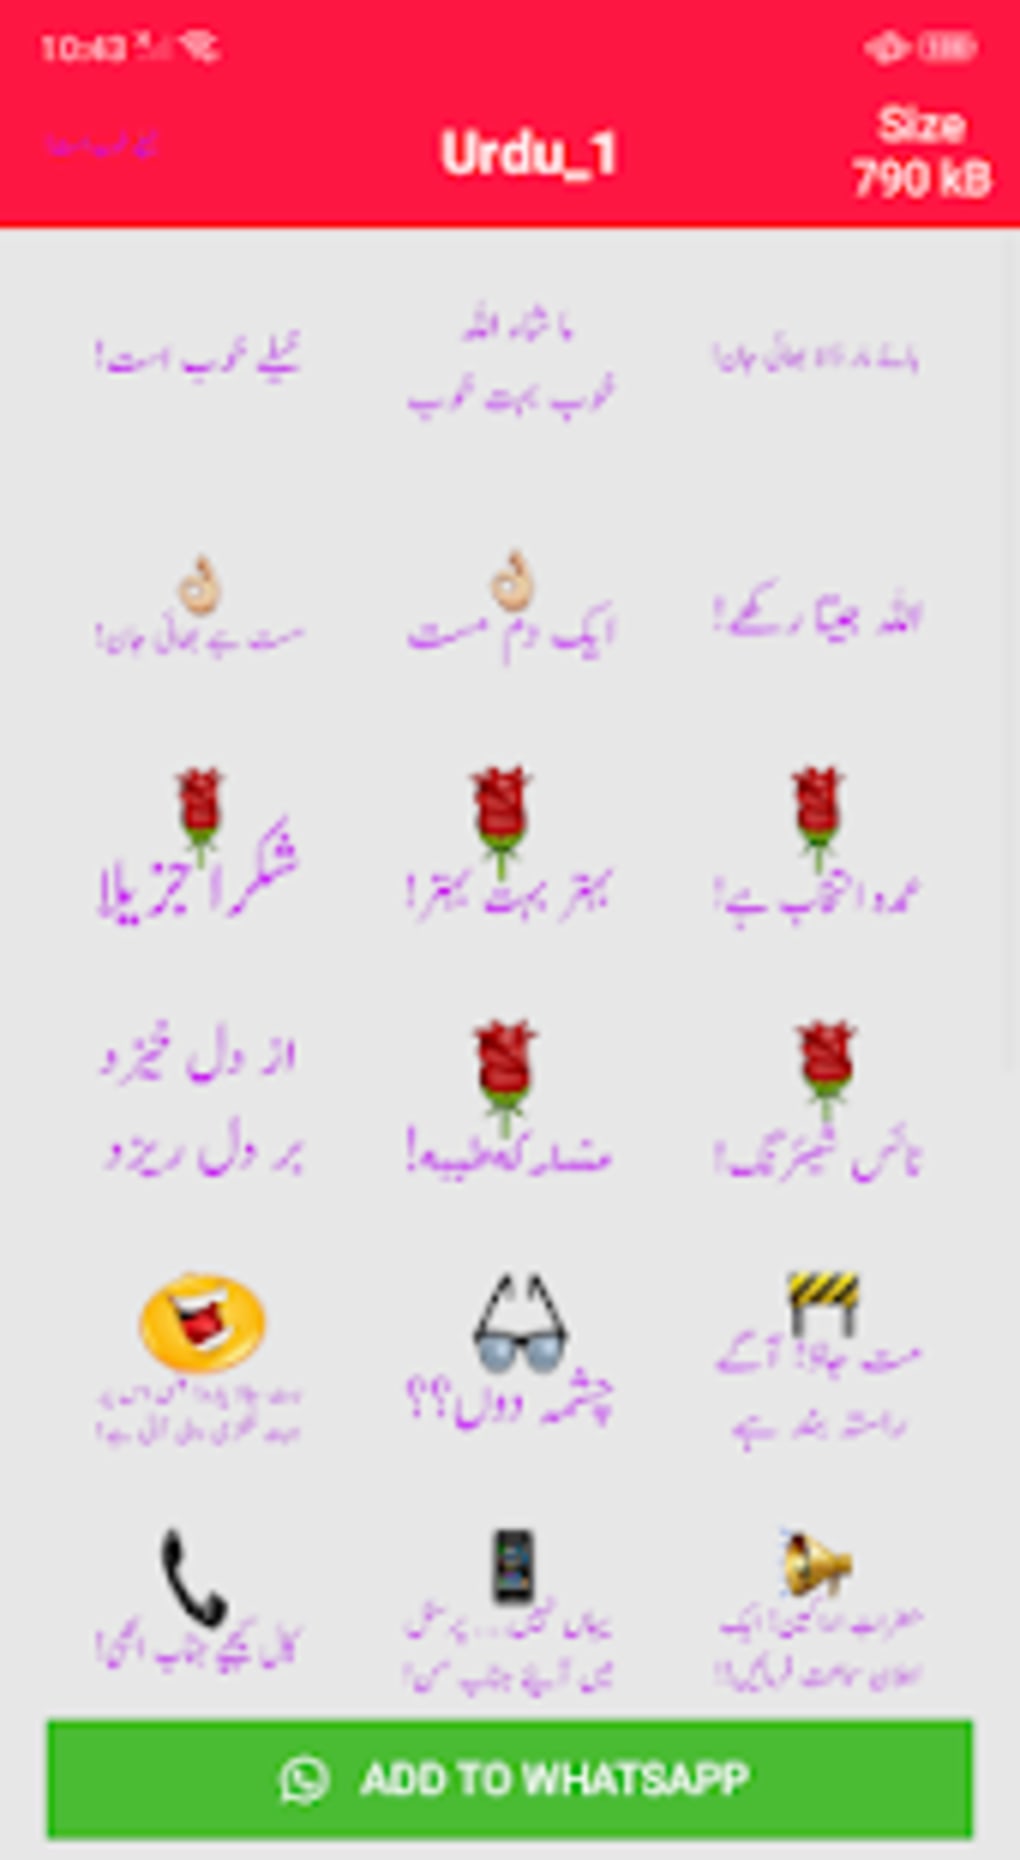 Whatsapp stickers urdu